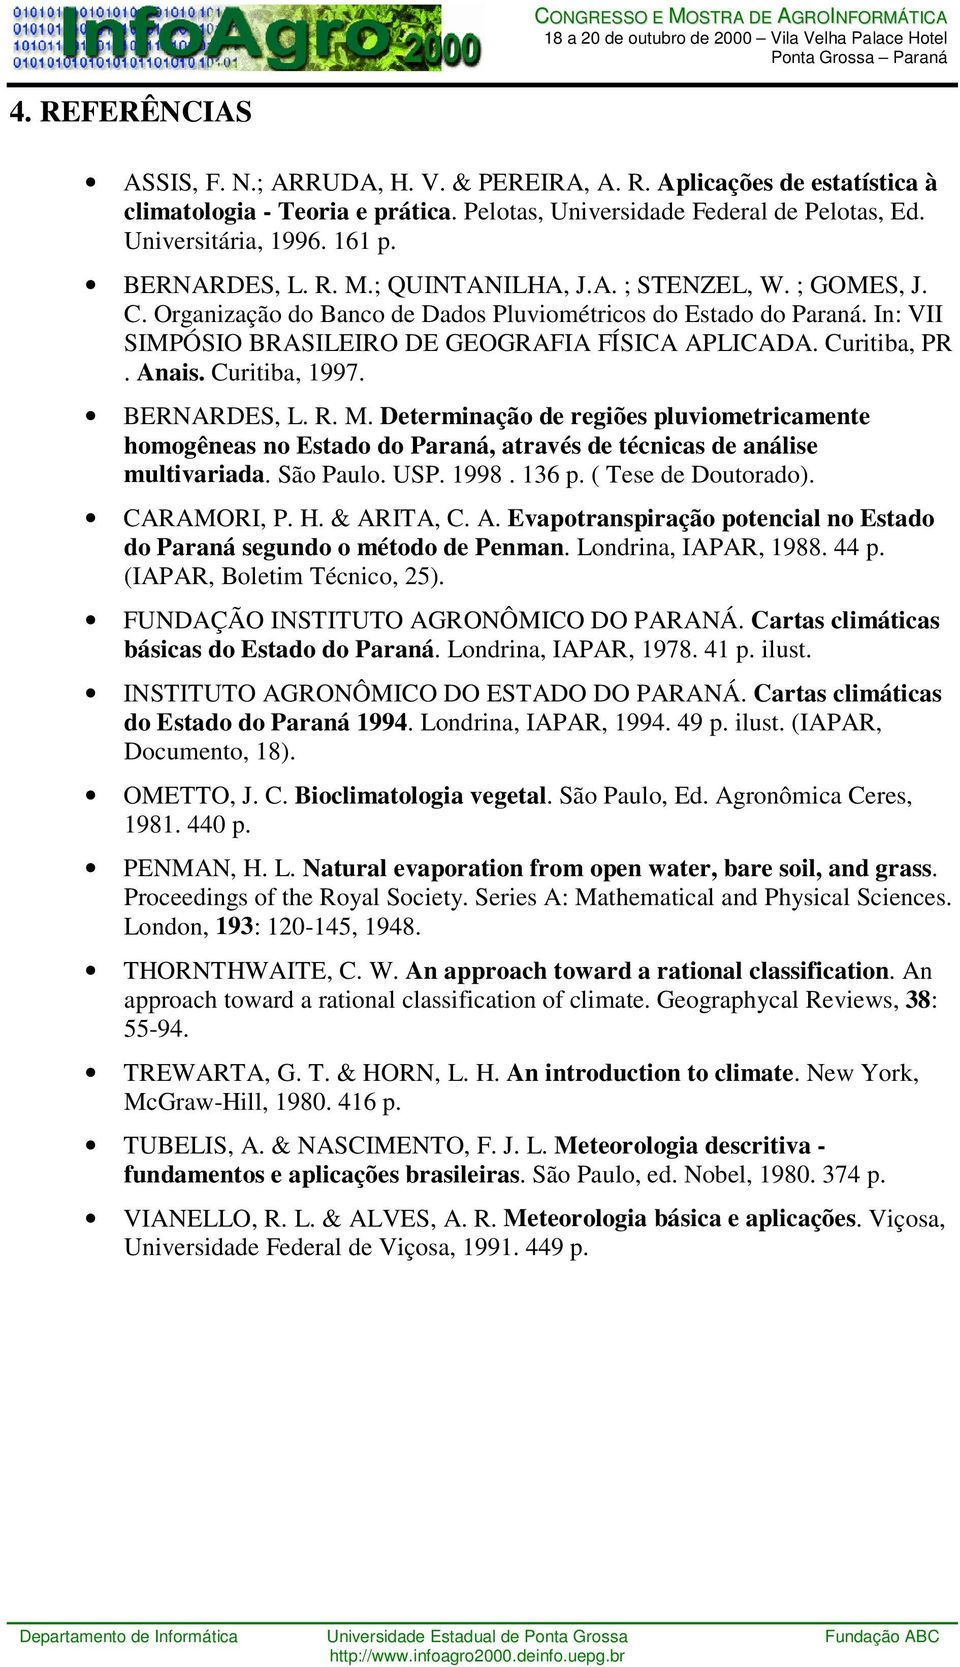 Curitiba, PR. Anais. Curitiba, 1997. BERNARDES, L. R. M. Determinação de regiões pluviometricamente homogêneas no Estado do Paraná, através de técnicas de análise multivariada. São Paulo. USP. 1998.